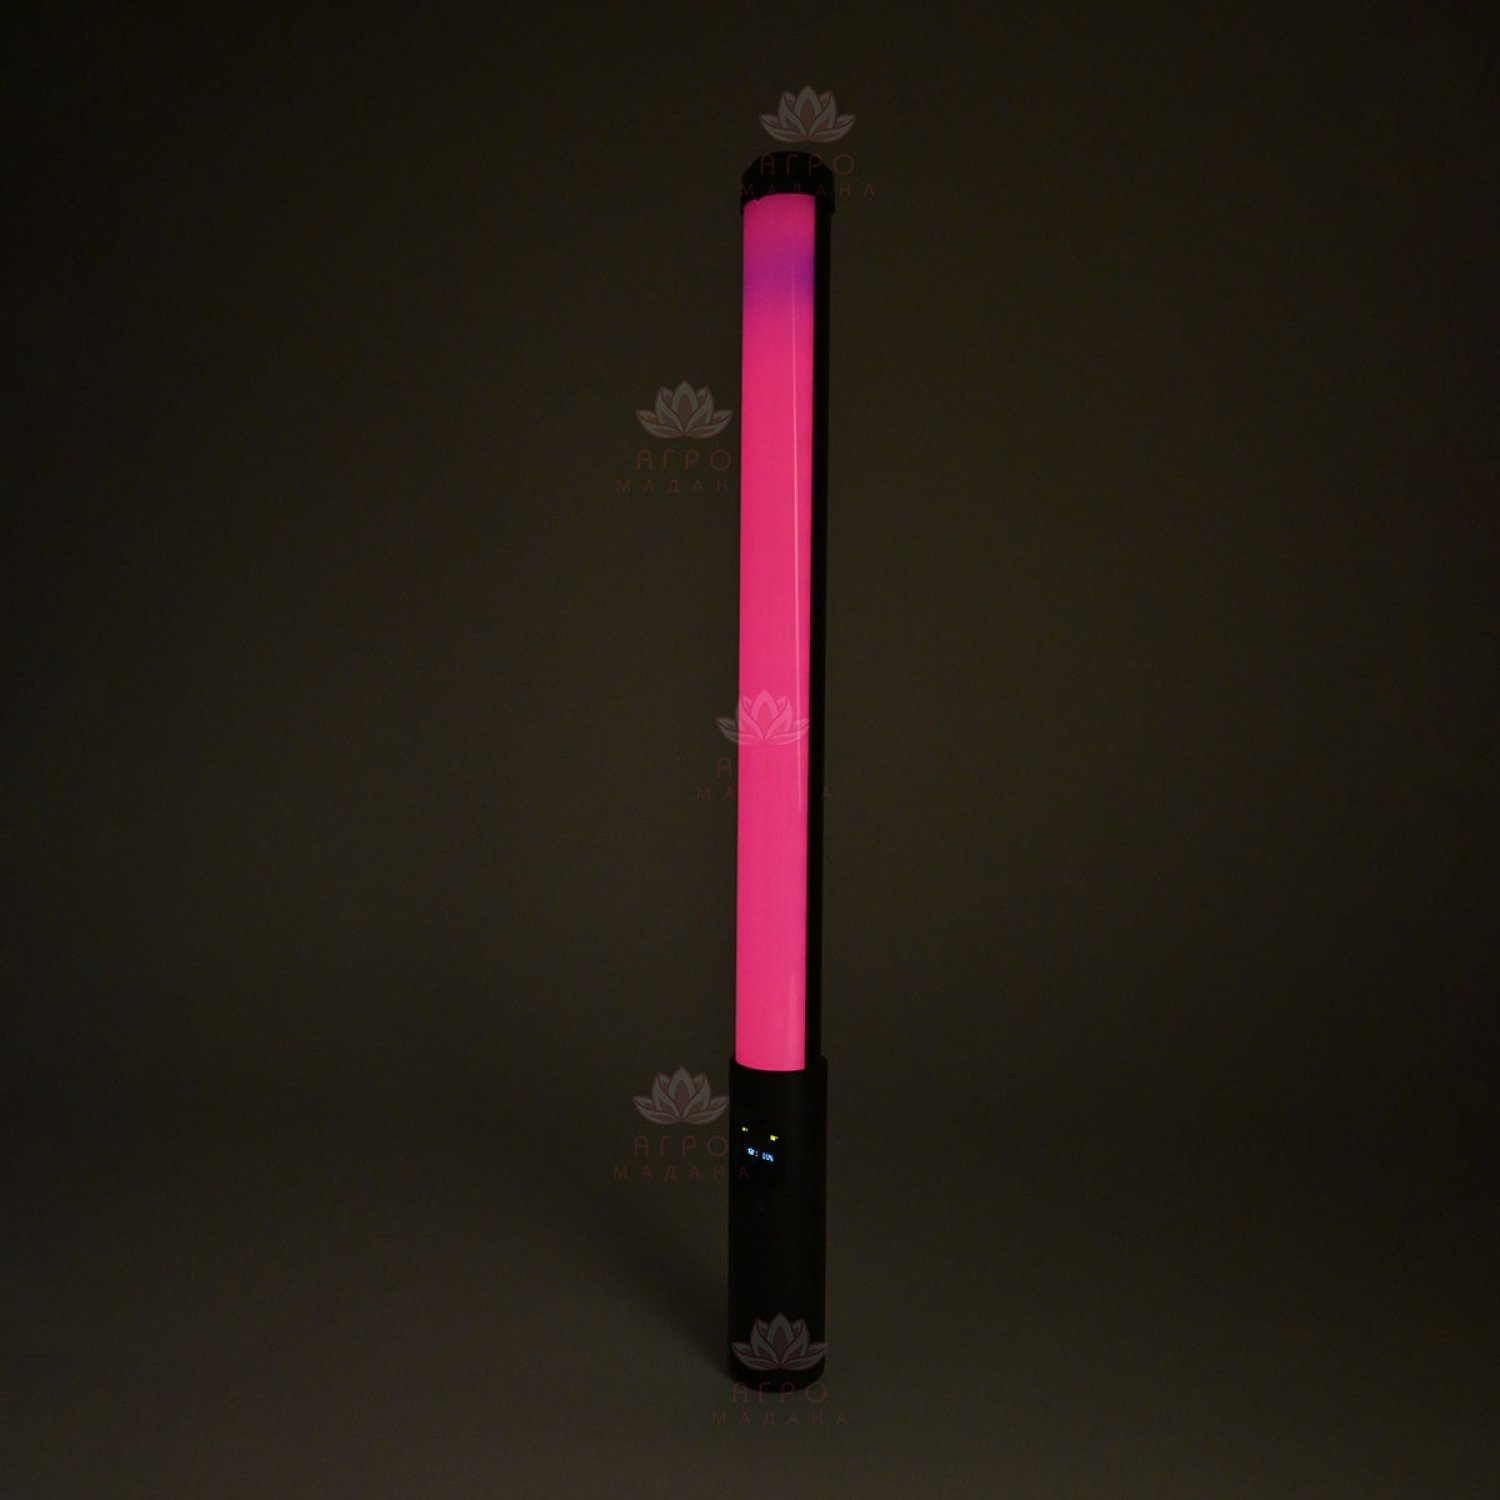 RGB Light Stick / Светодиодный торшер с креплением на штатив